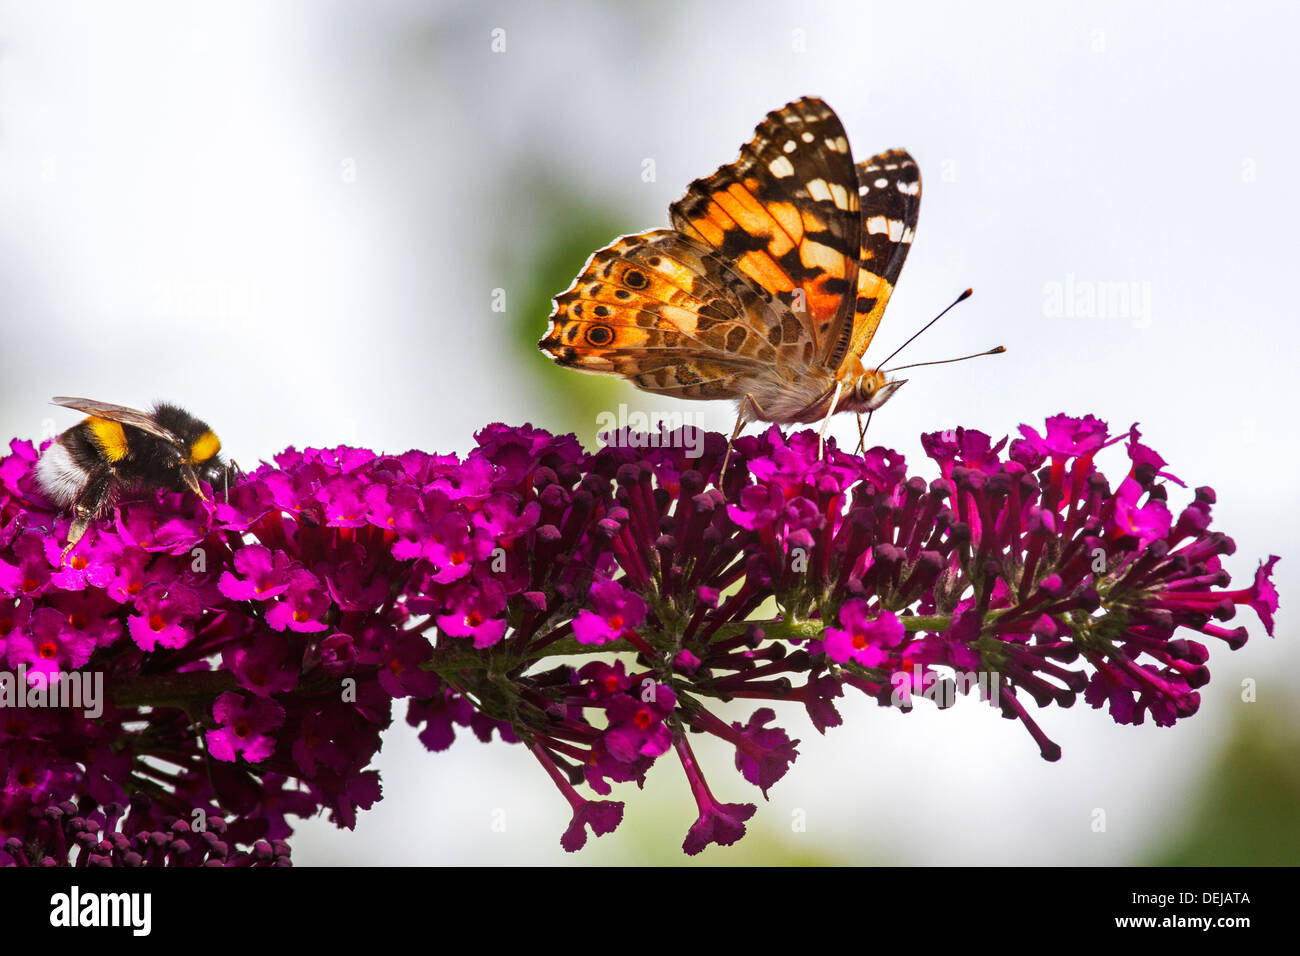 Papillon belle dame (Vanessa cardui) et Buff-tailed / grande terre bourdon (Bombus terrestris) pollinisent les fleurs lilas Banque D'Images